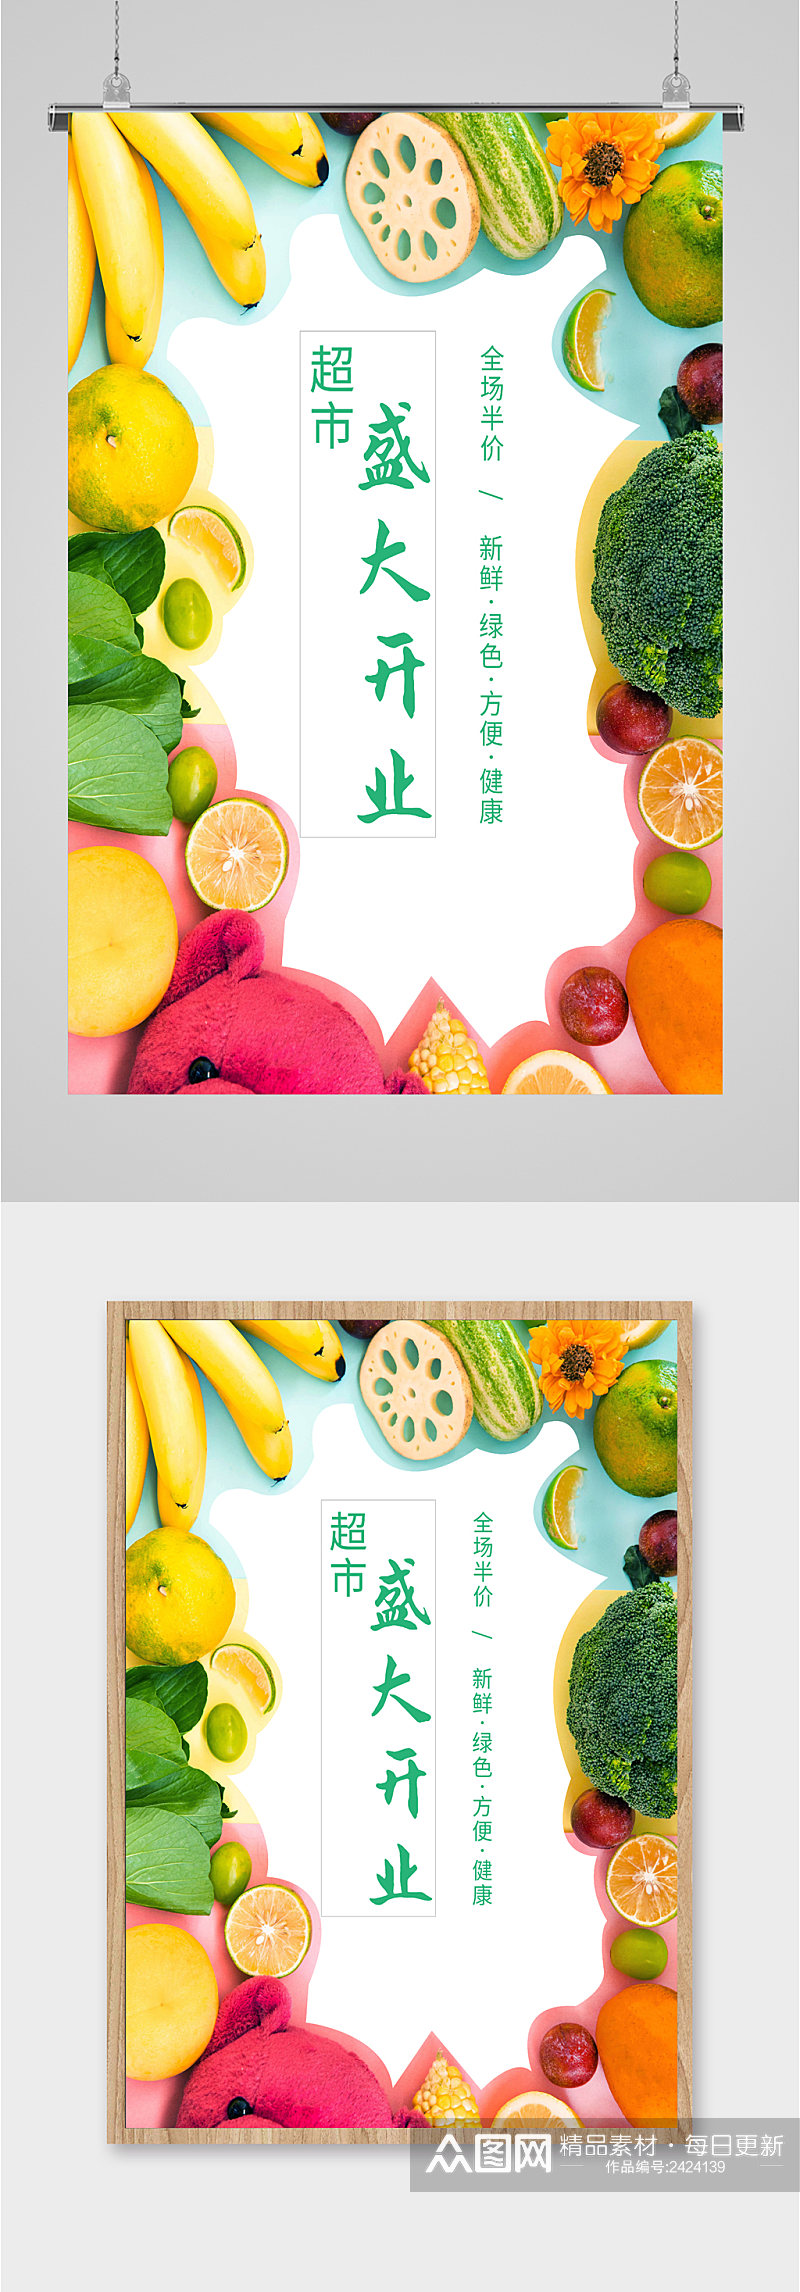 水果生鲜开业活动海报素材